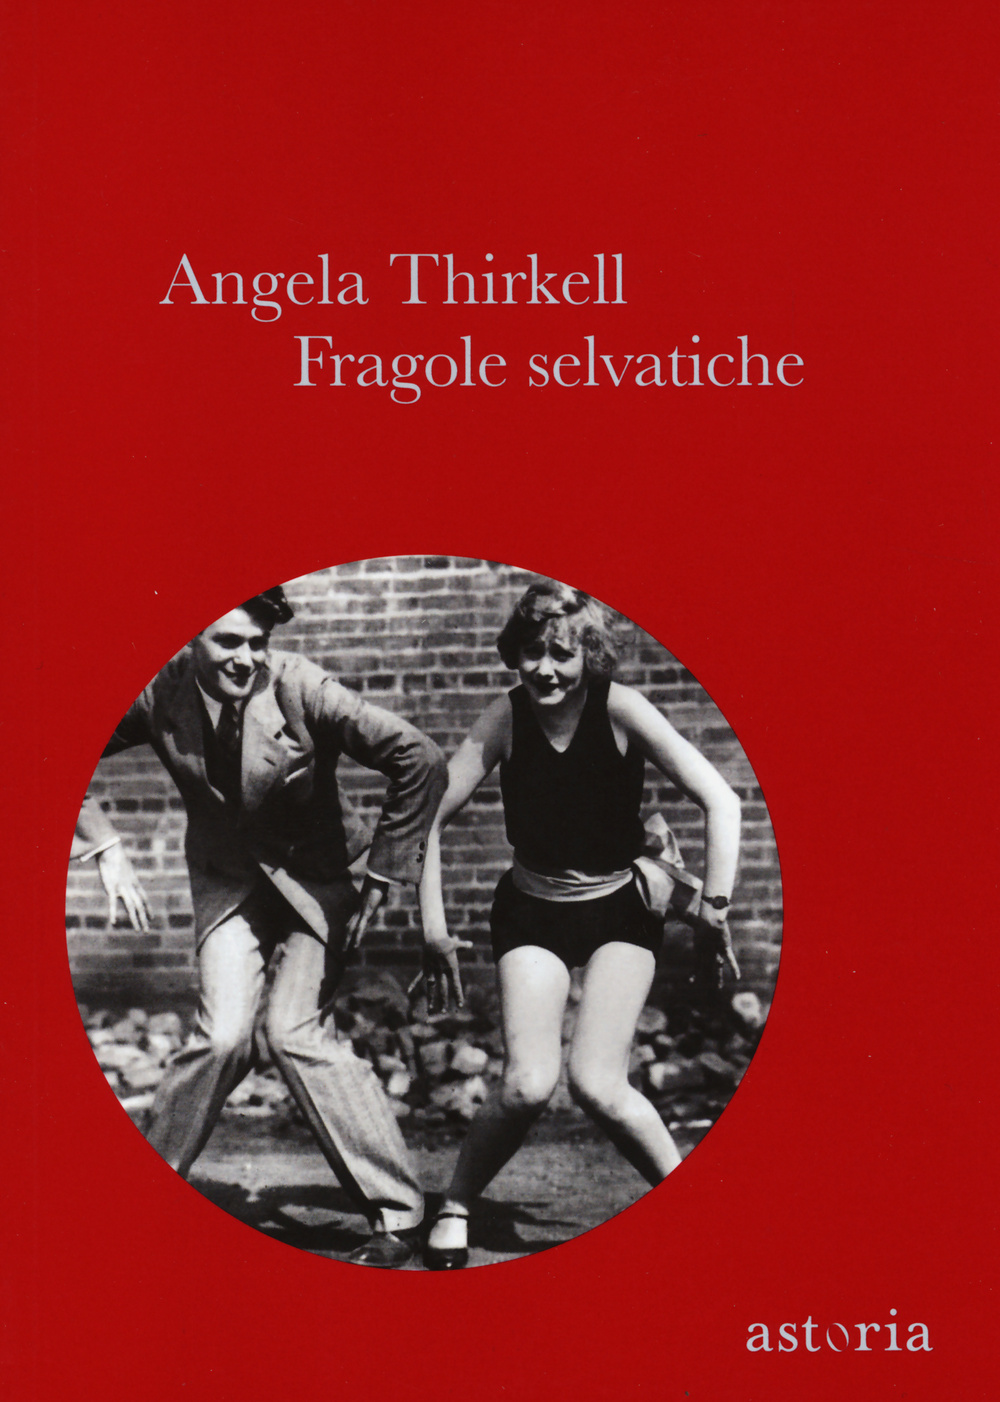 Libri Angela Thirkell - Fragole Selvatiche NUOVO SIGILLATO, EDIZIONE DEL 15/10/2014 SUBITO DISPONIBILE